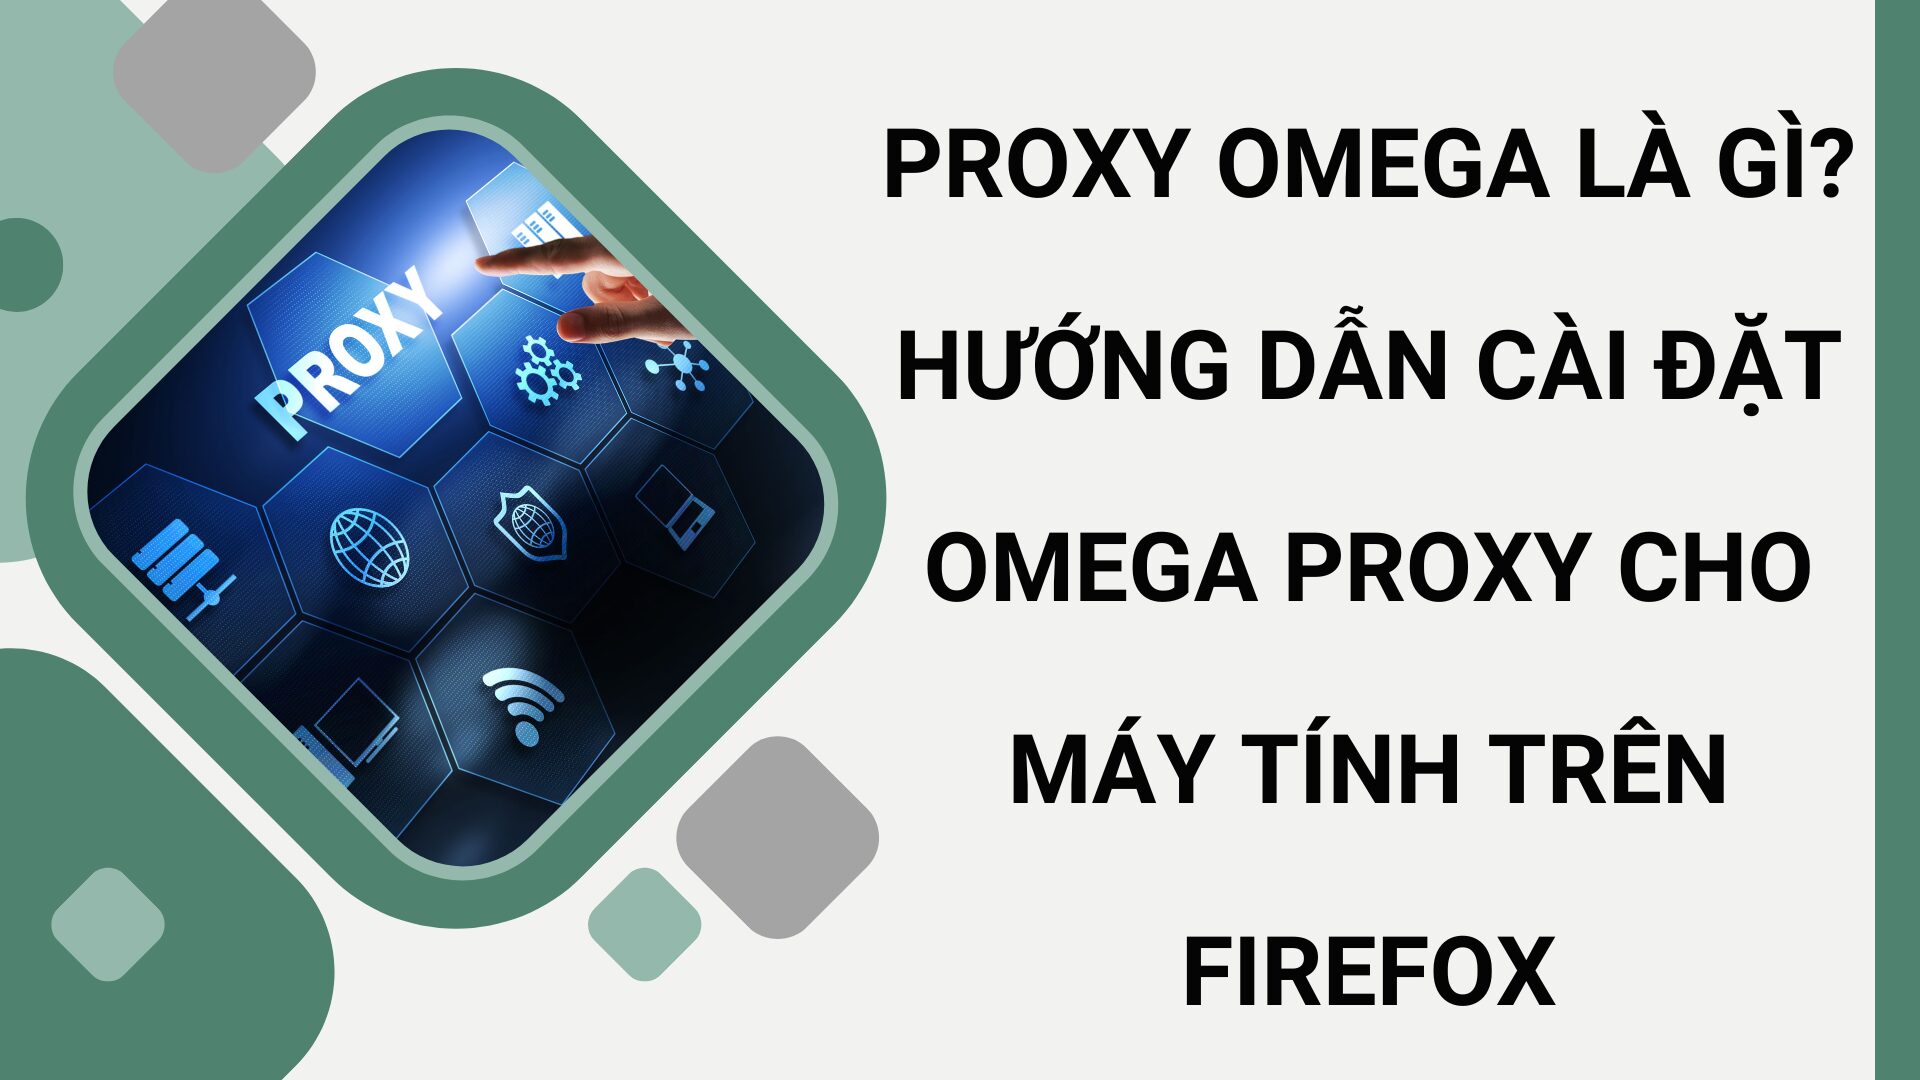 Omega Proxy là gì? Hướng dẫn cài đặt Omega Proxy cho máy tính trên Firefox